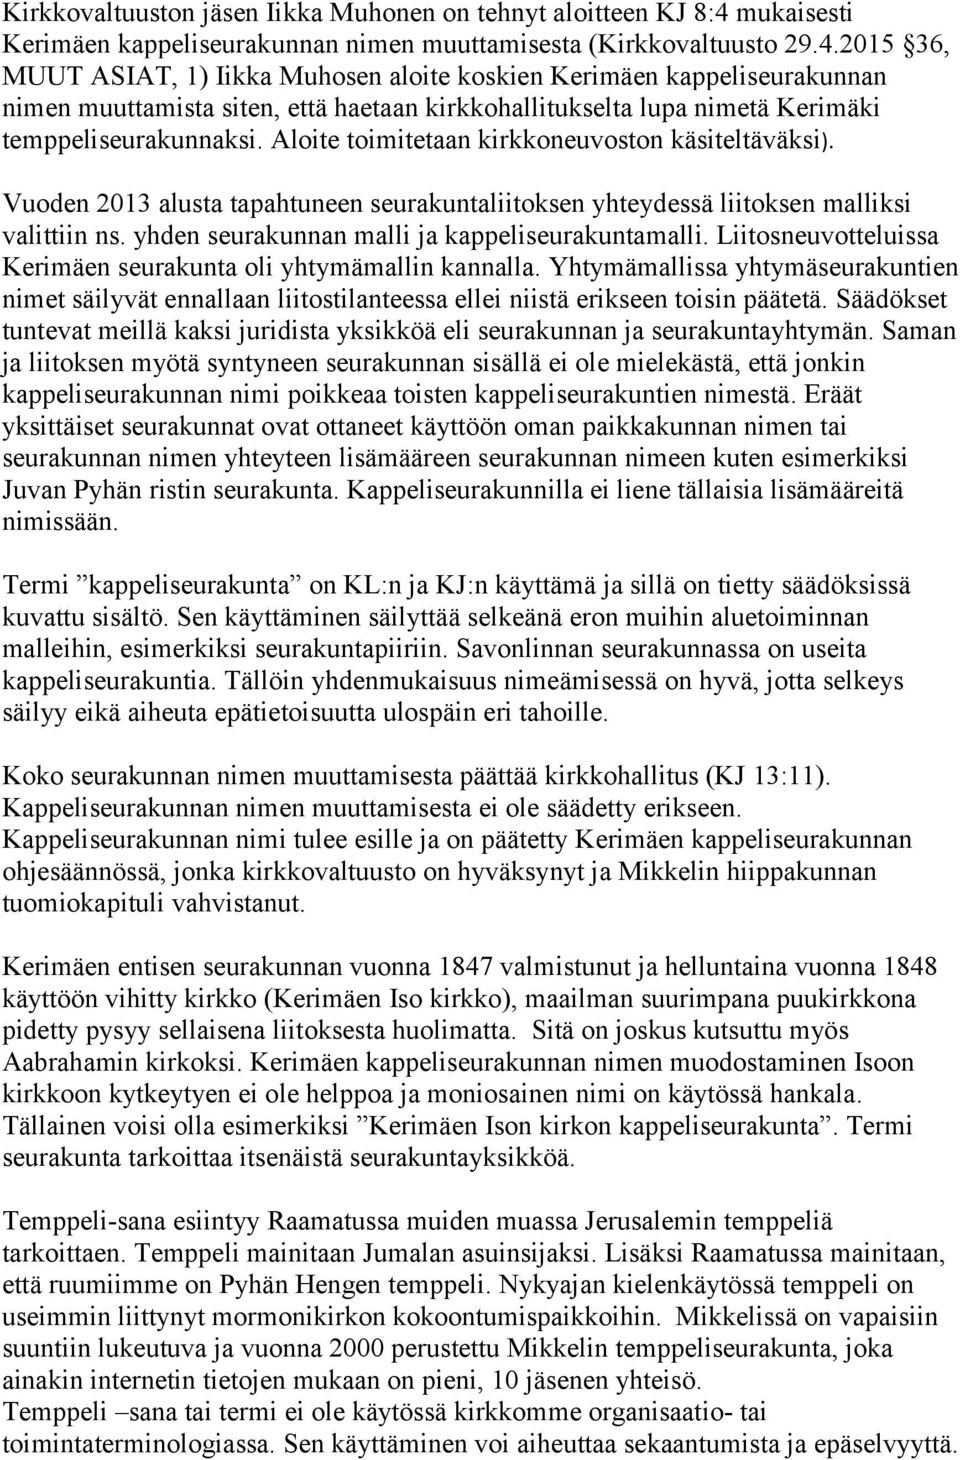 2015 36, MUUT ASIAT, 1) Iikka Muhosen aloite koskien Kerimäen kappeliseurakunnan nimen muuttamista siten, että haetaan kirkkohallitukselta lupa nimetä Kerimäki temppeliseurakunnaksi.